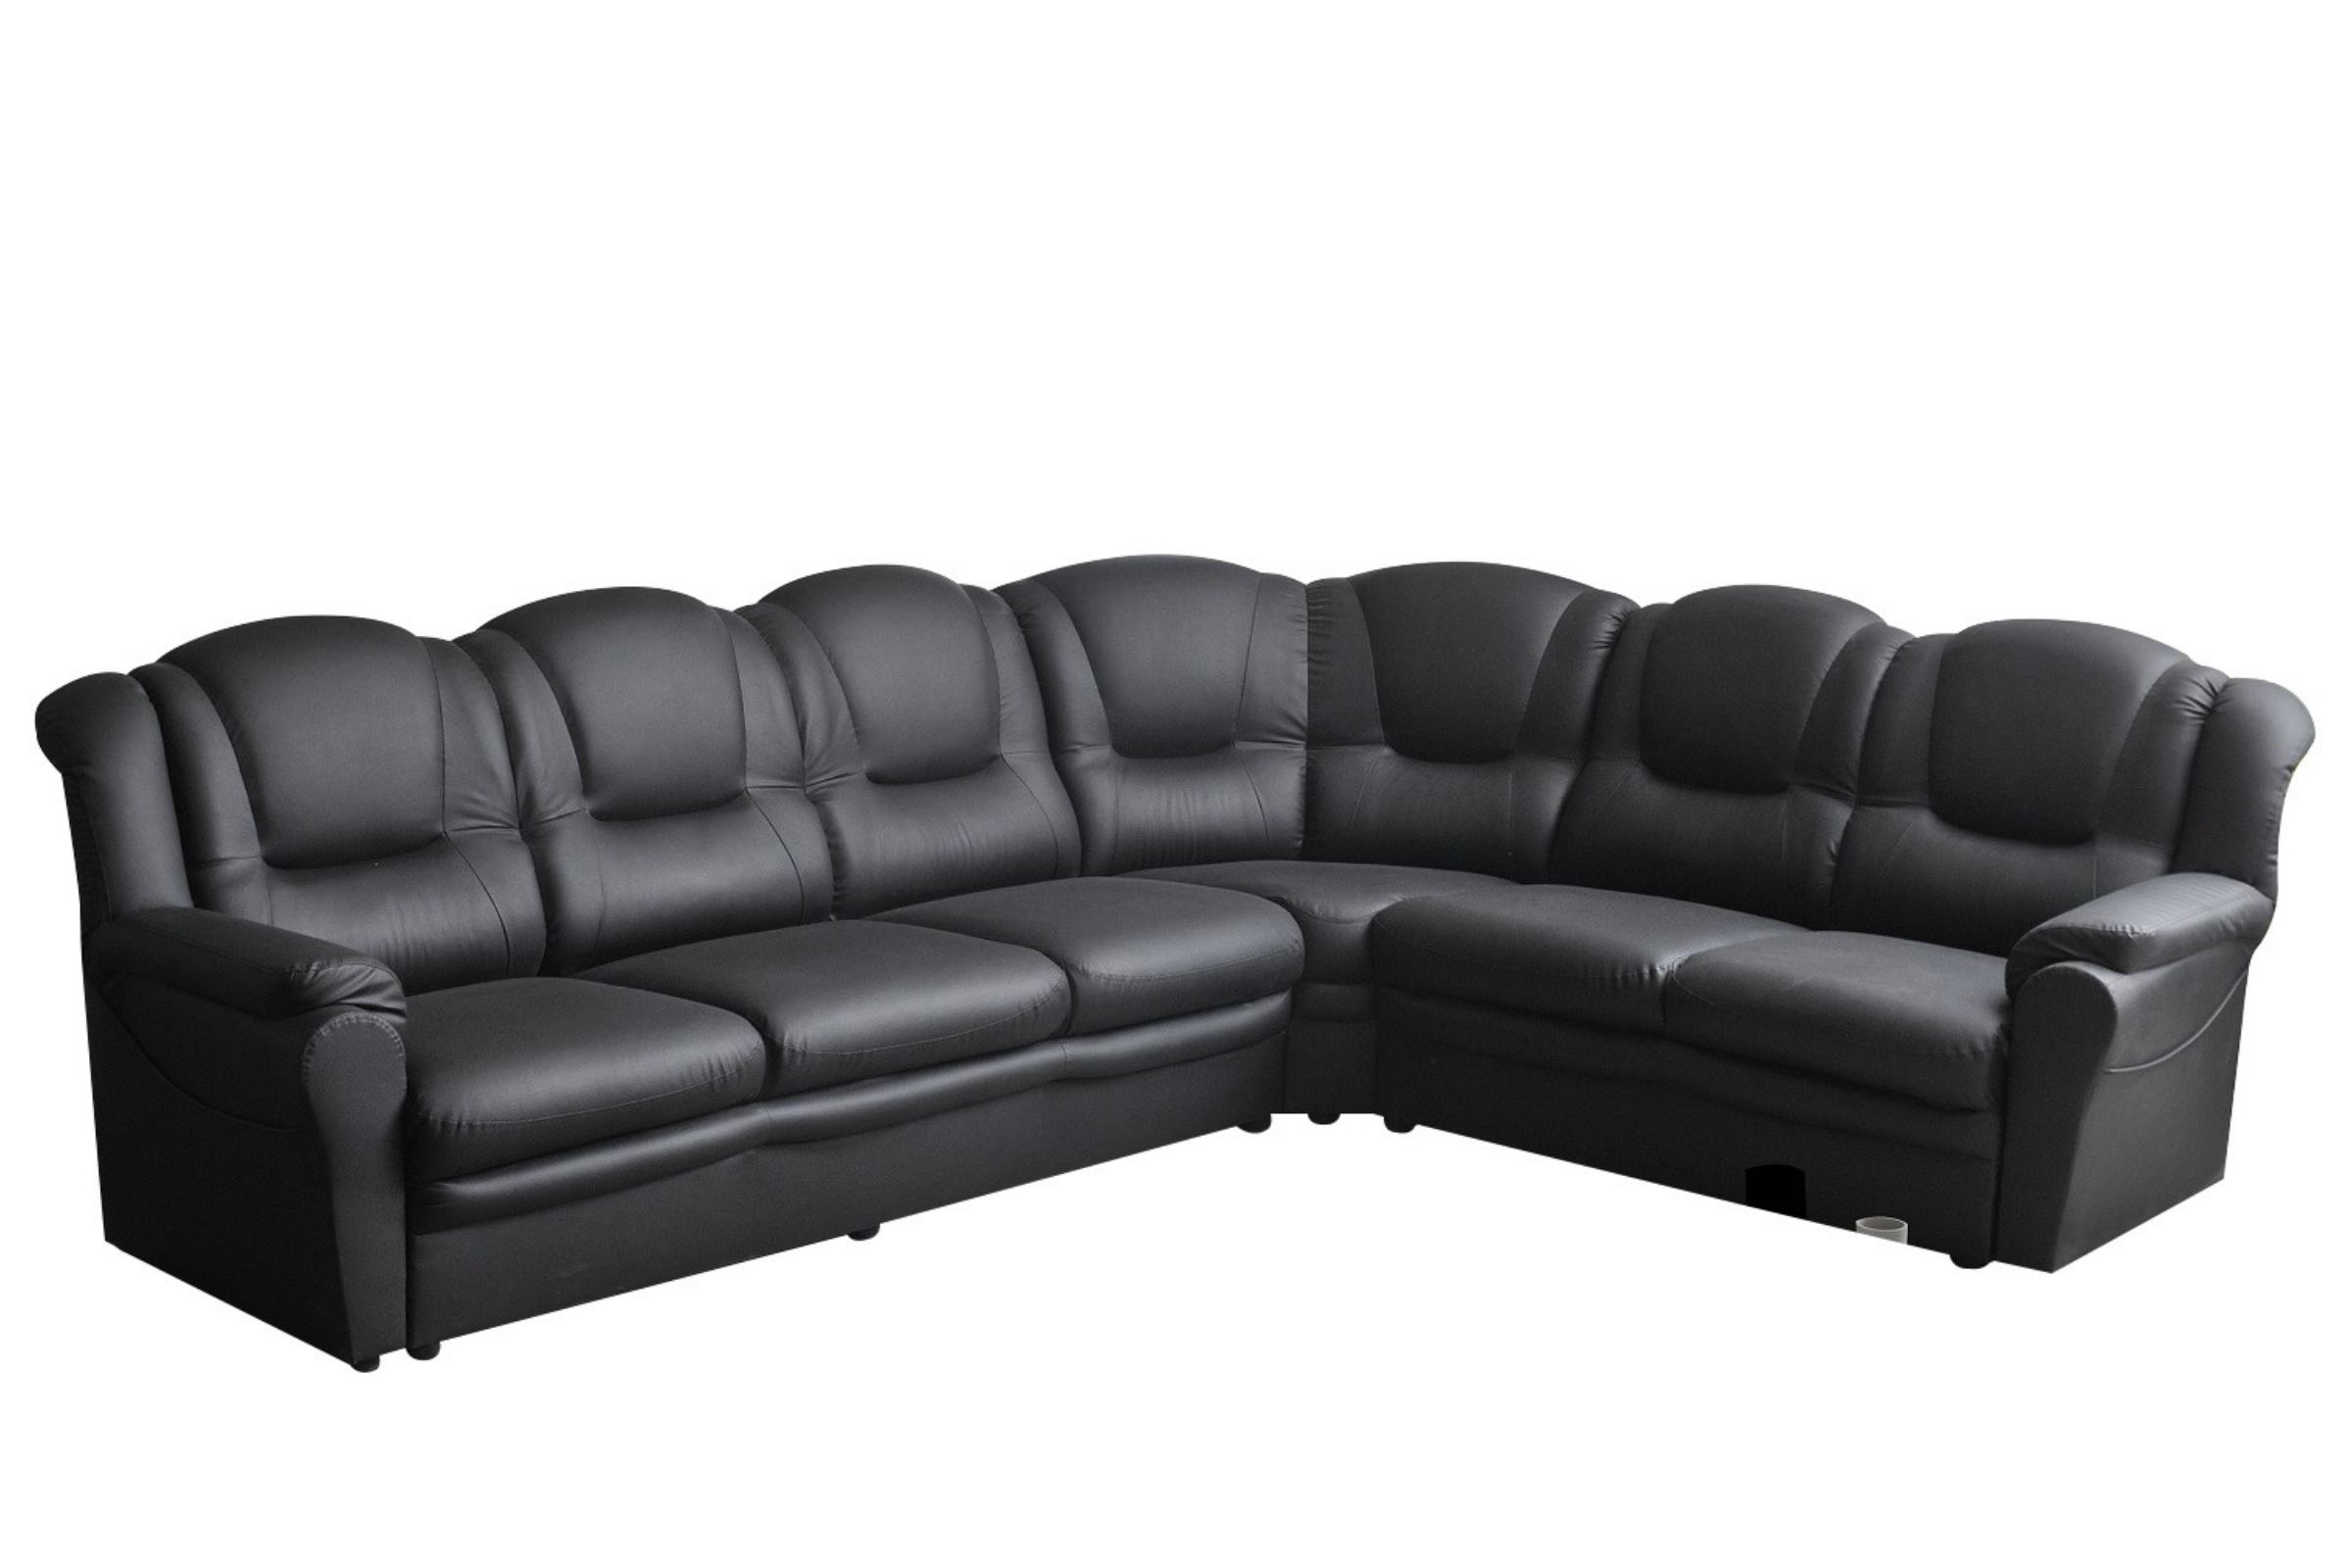 leather sofa houston texas